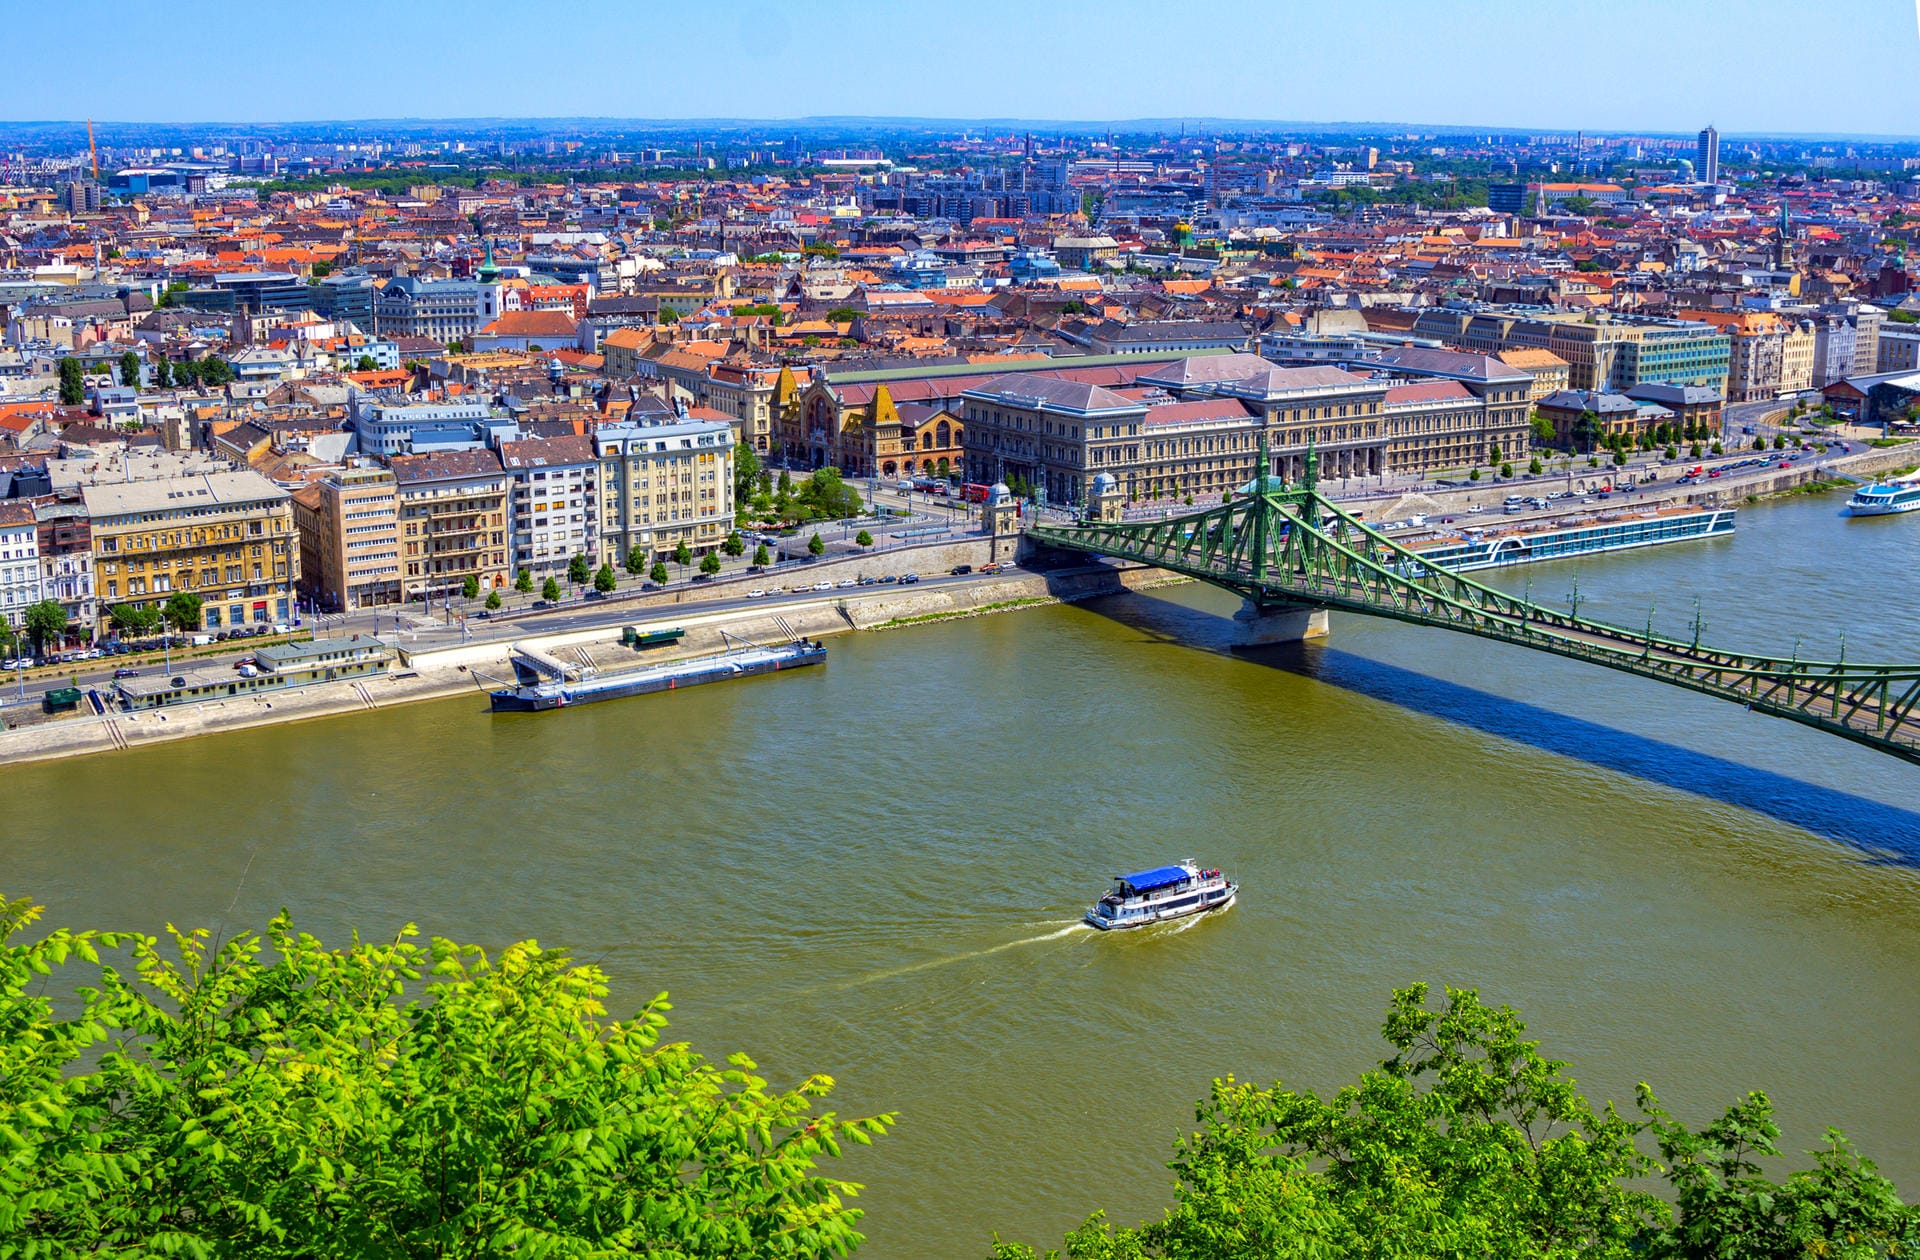 Blick auf Budapest vom Gellértberg: Auf Platz fünf des Rankings liegt die Budapest. Die ungarische Hauptstadt beeindruck nicht nur mit historischen Bauten, sondern auch mit niedrigen Preisen für Unterkünfte und Verpflegung.